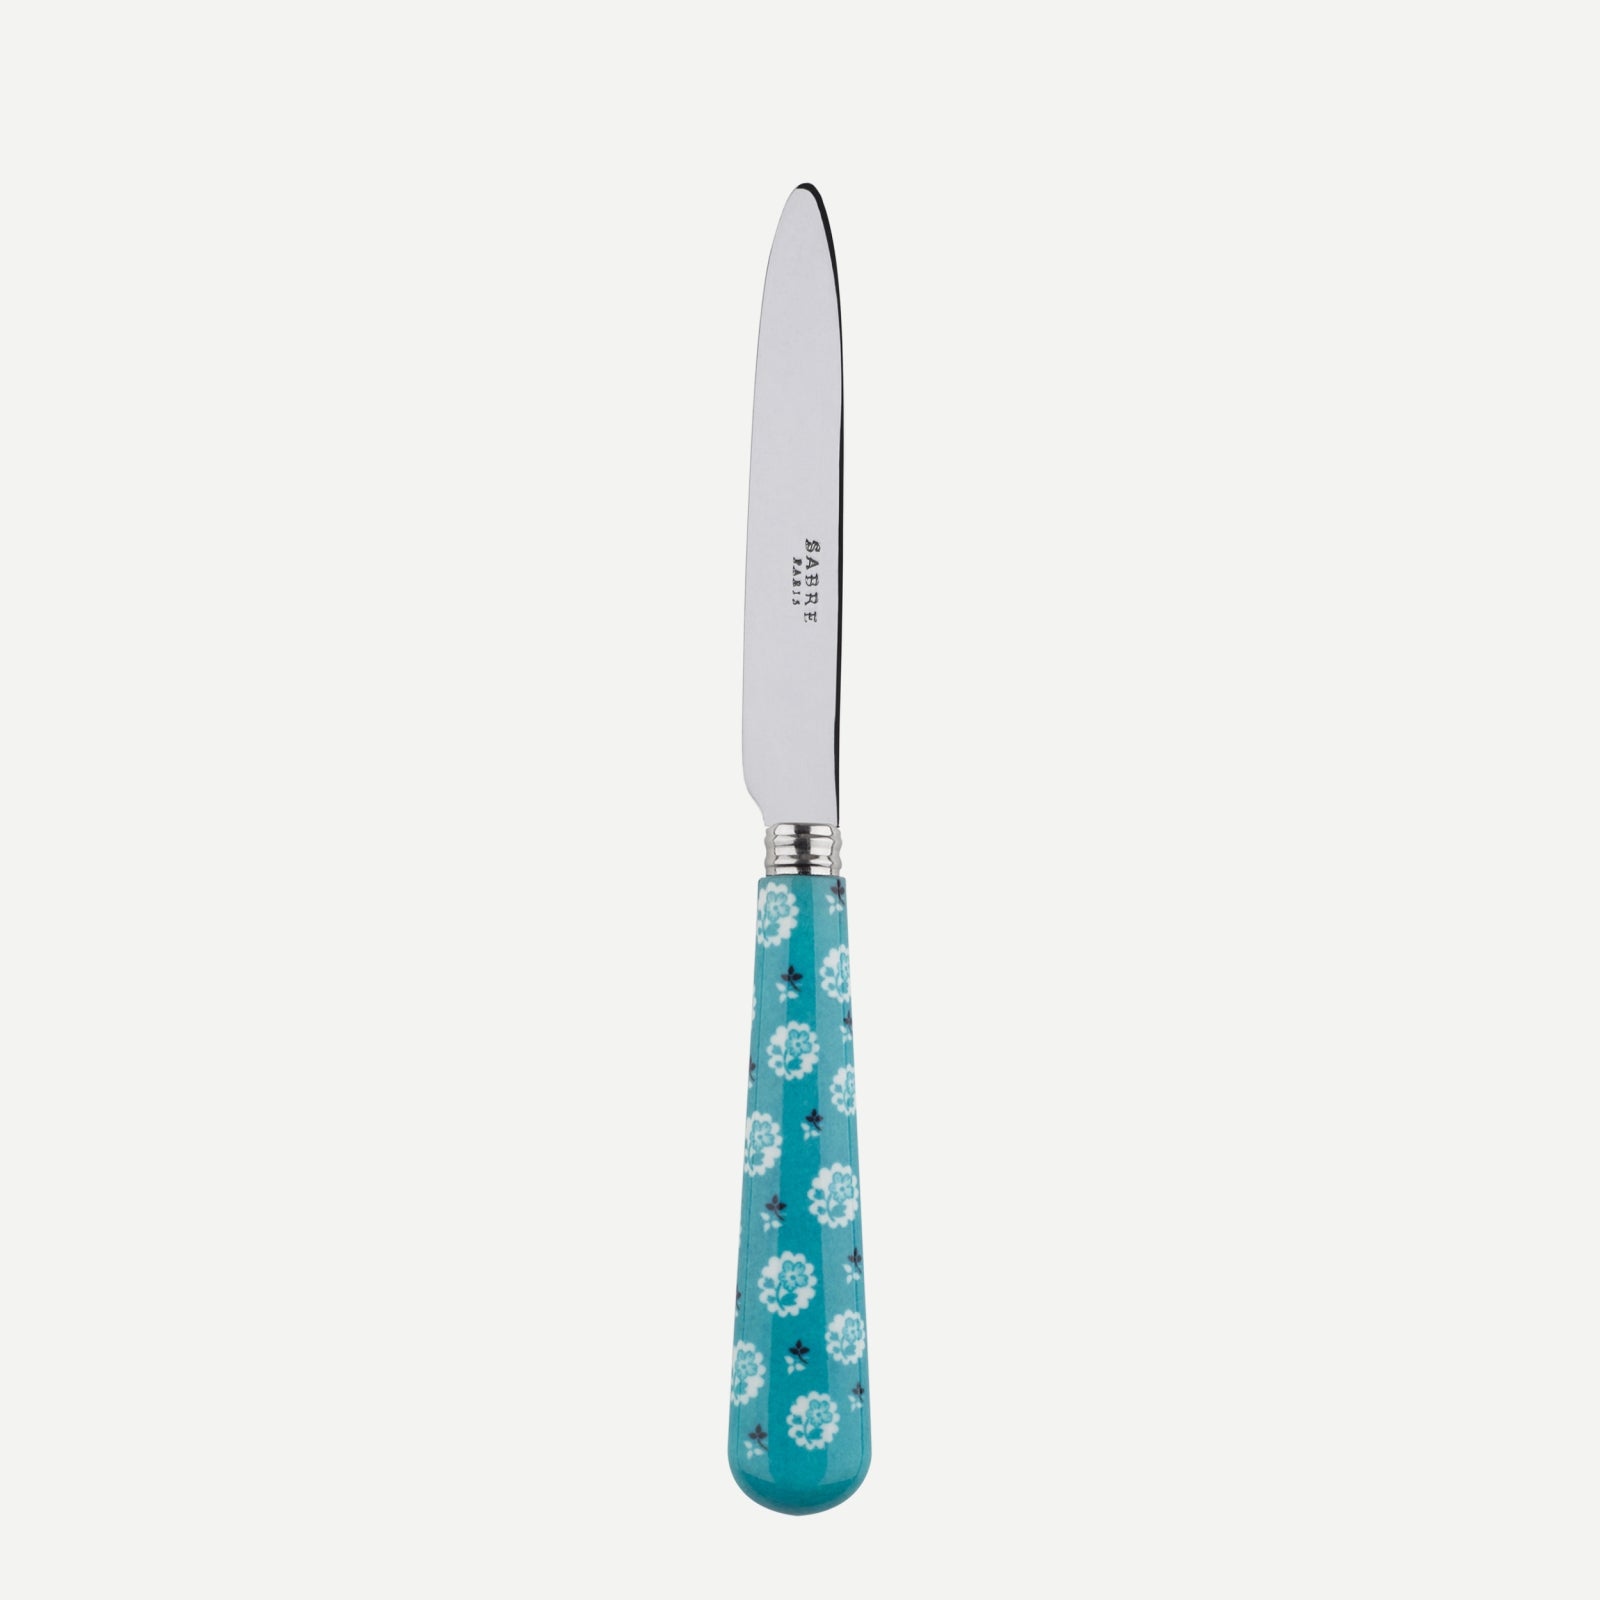 Dessert knife - Provencal - Turquoise